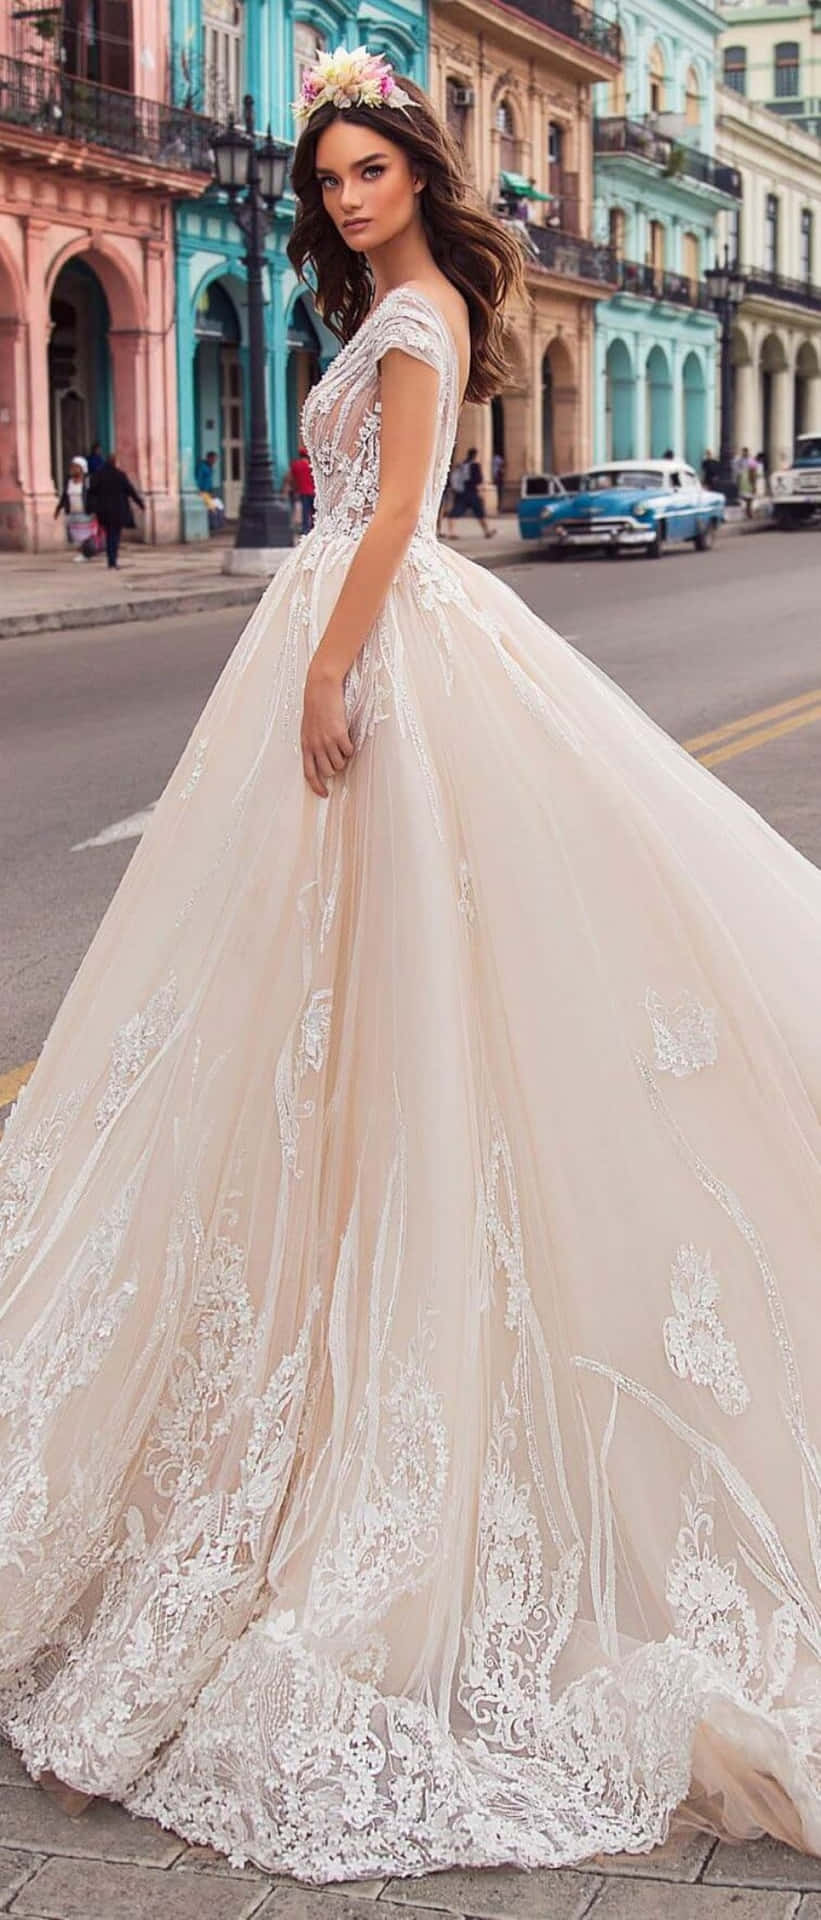 Elegant bride in a stunning wedding gown